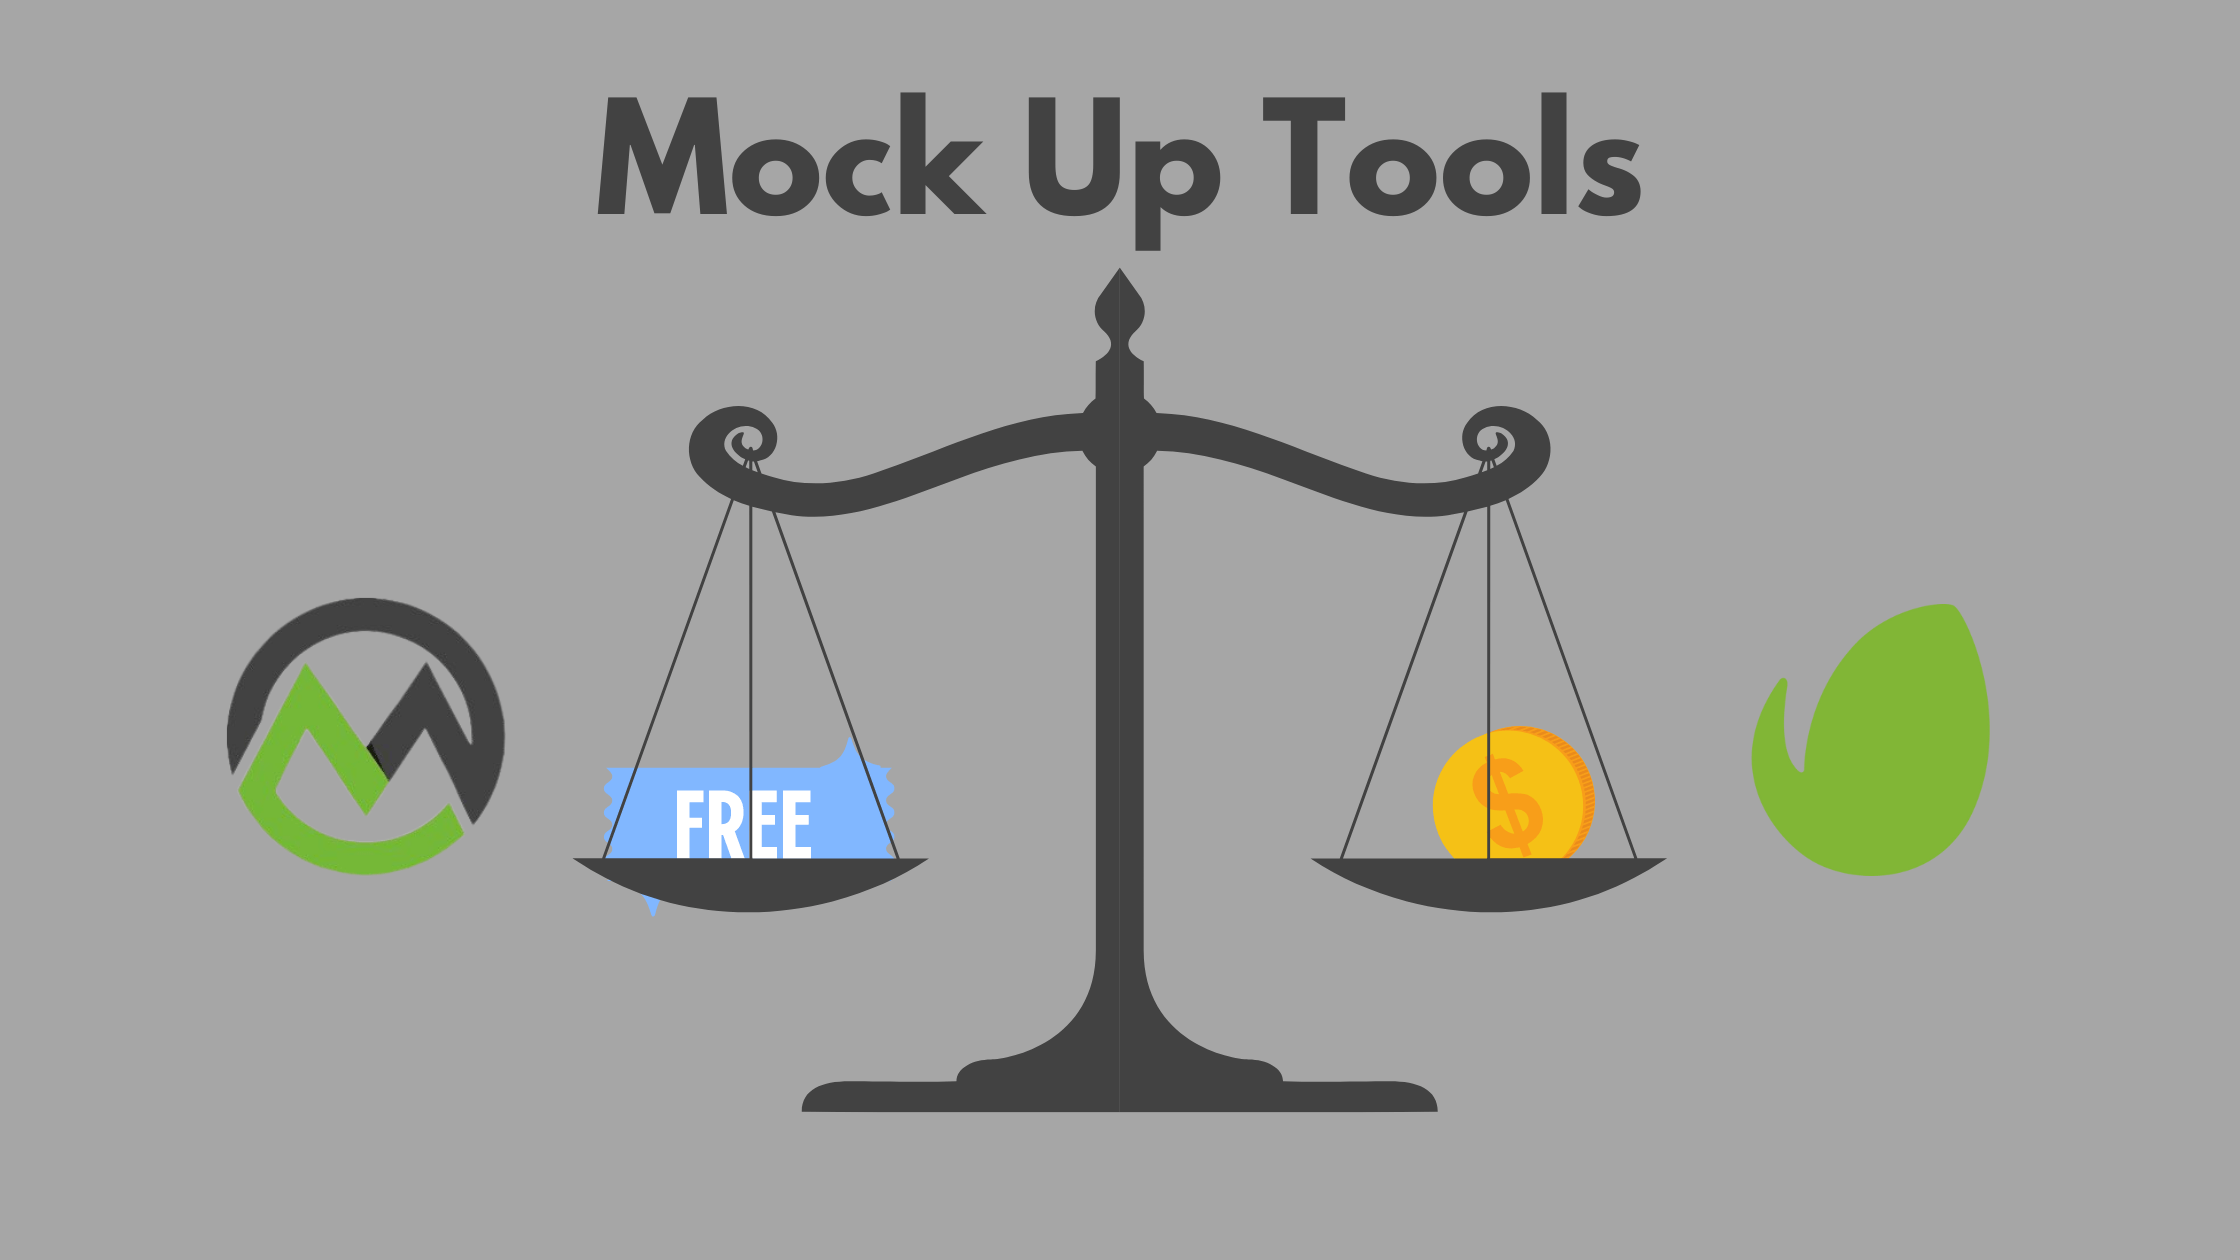 Free vs Paid Tools